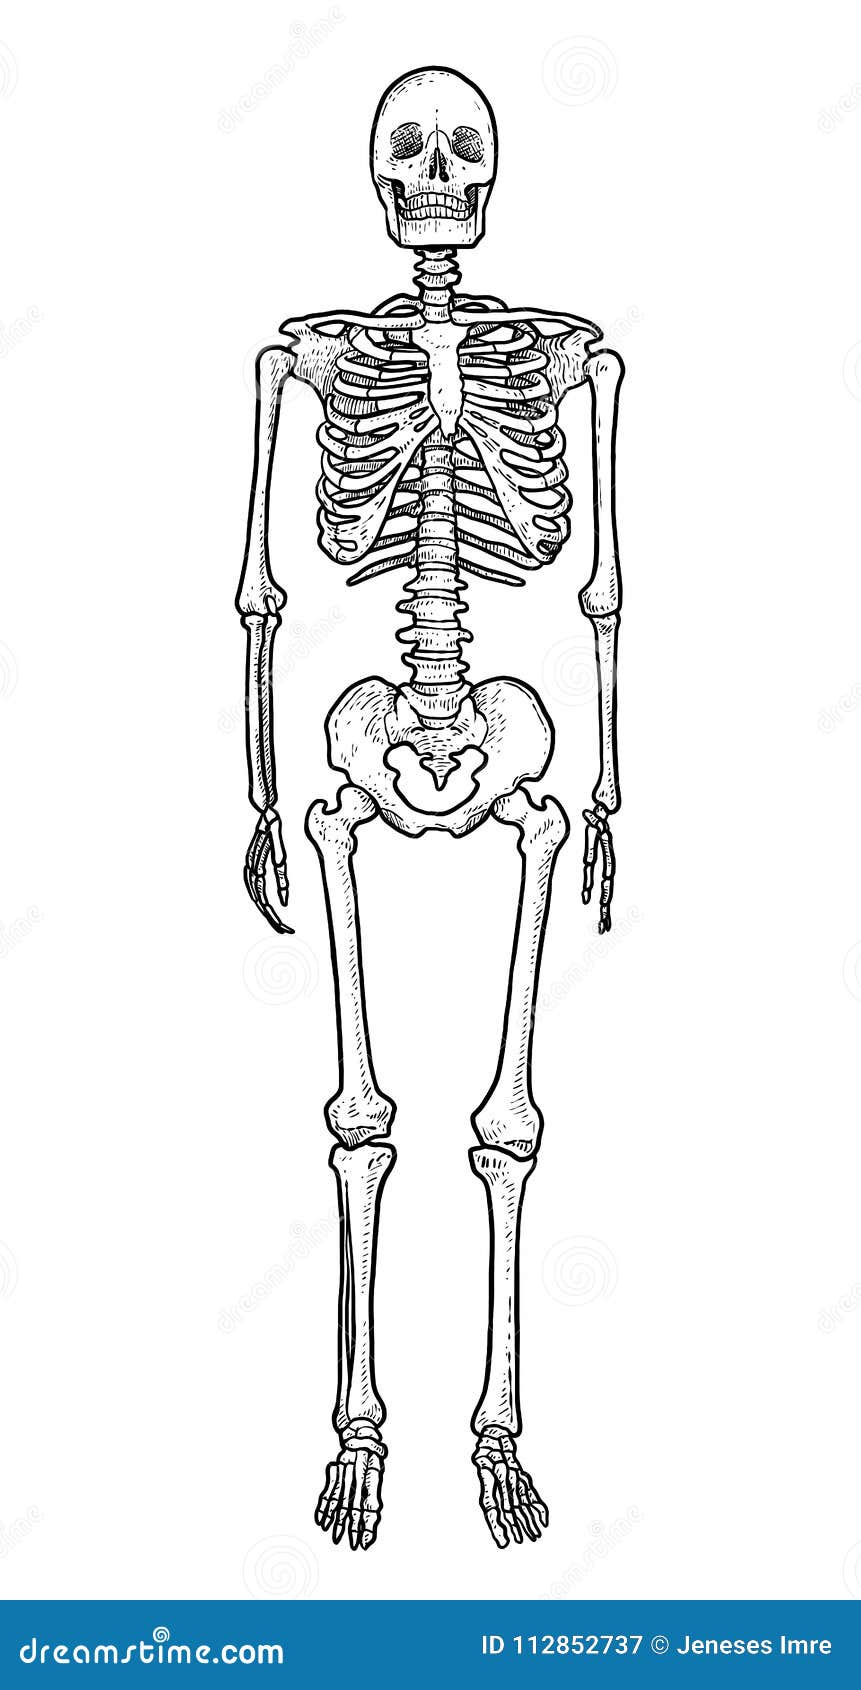 Share 74+ skeleton sketch art latest - seven.edu.vn